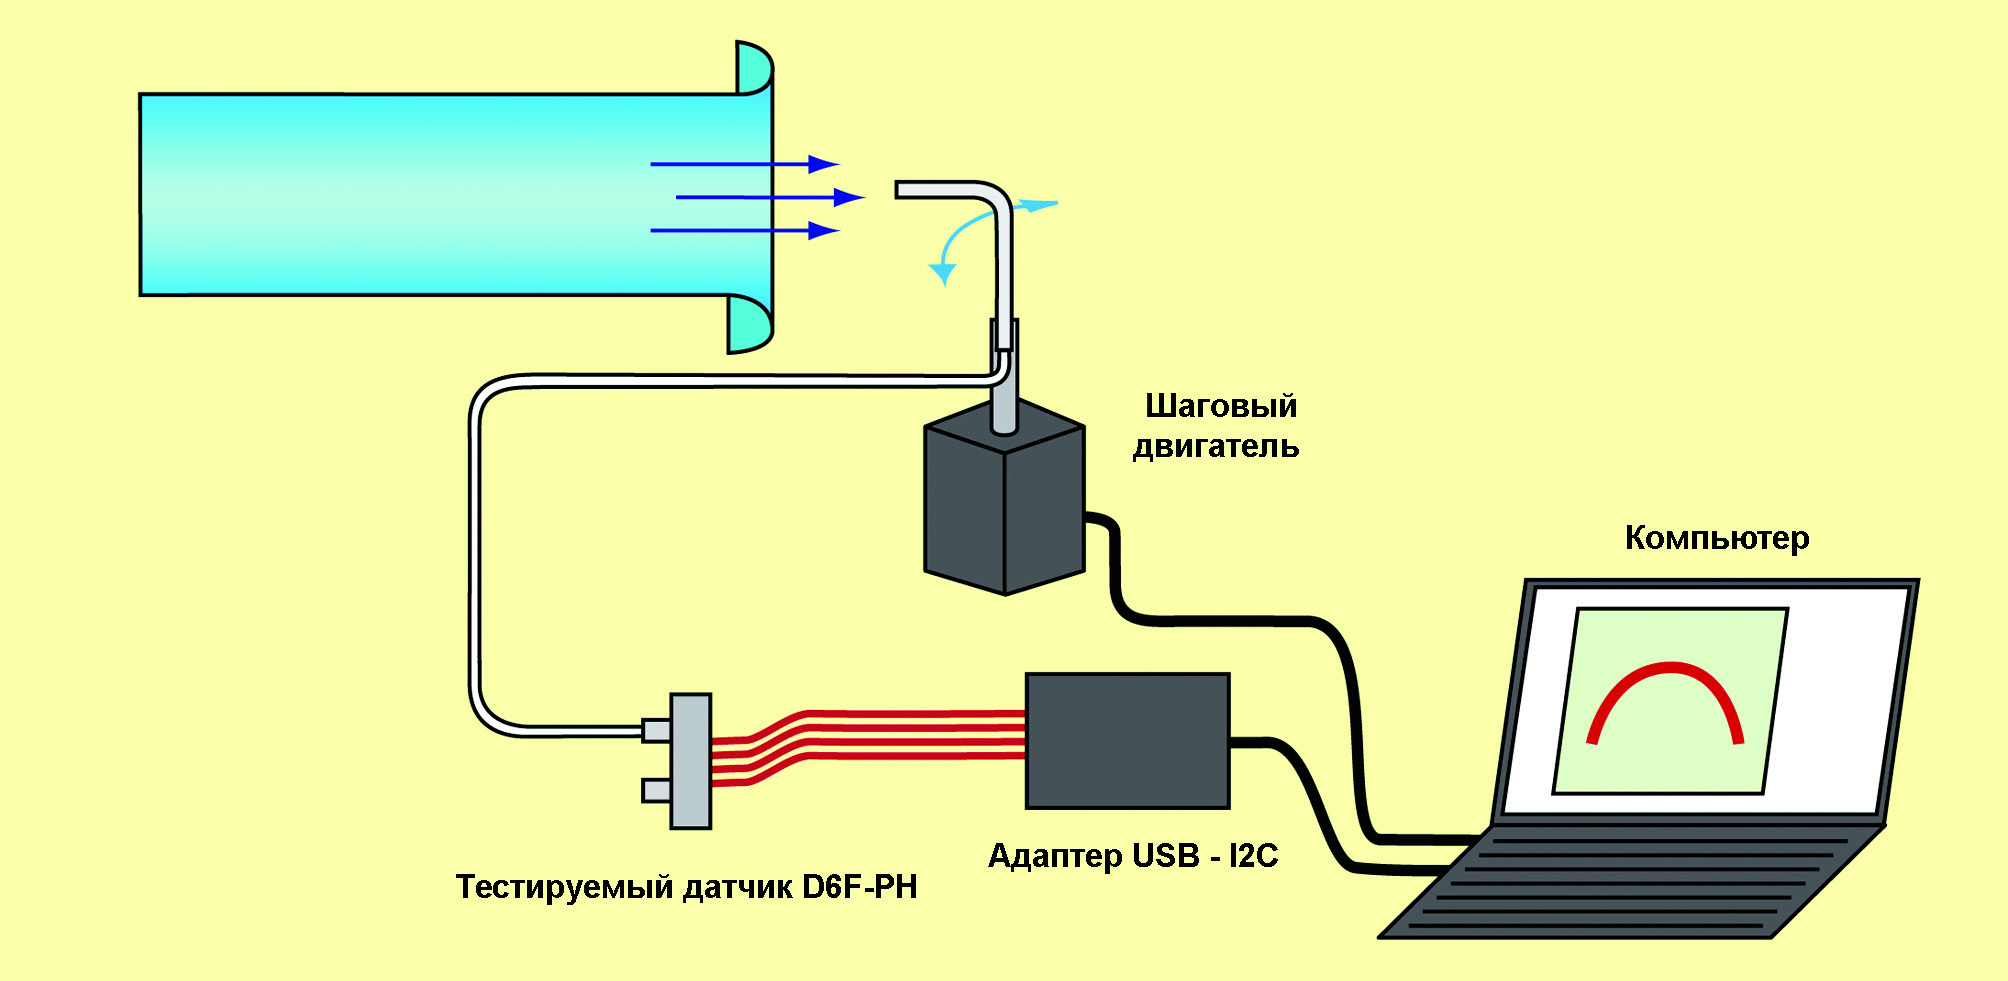 Рис. 11. Схема лабораторной установки для исследования воздушного потока пневмометрическим методом с помощью датчика D6F–PH